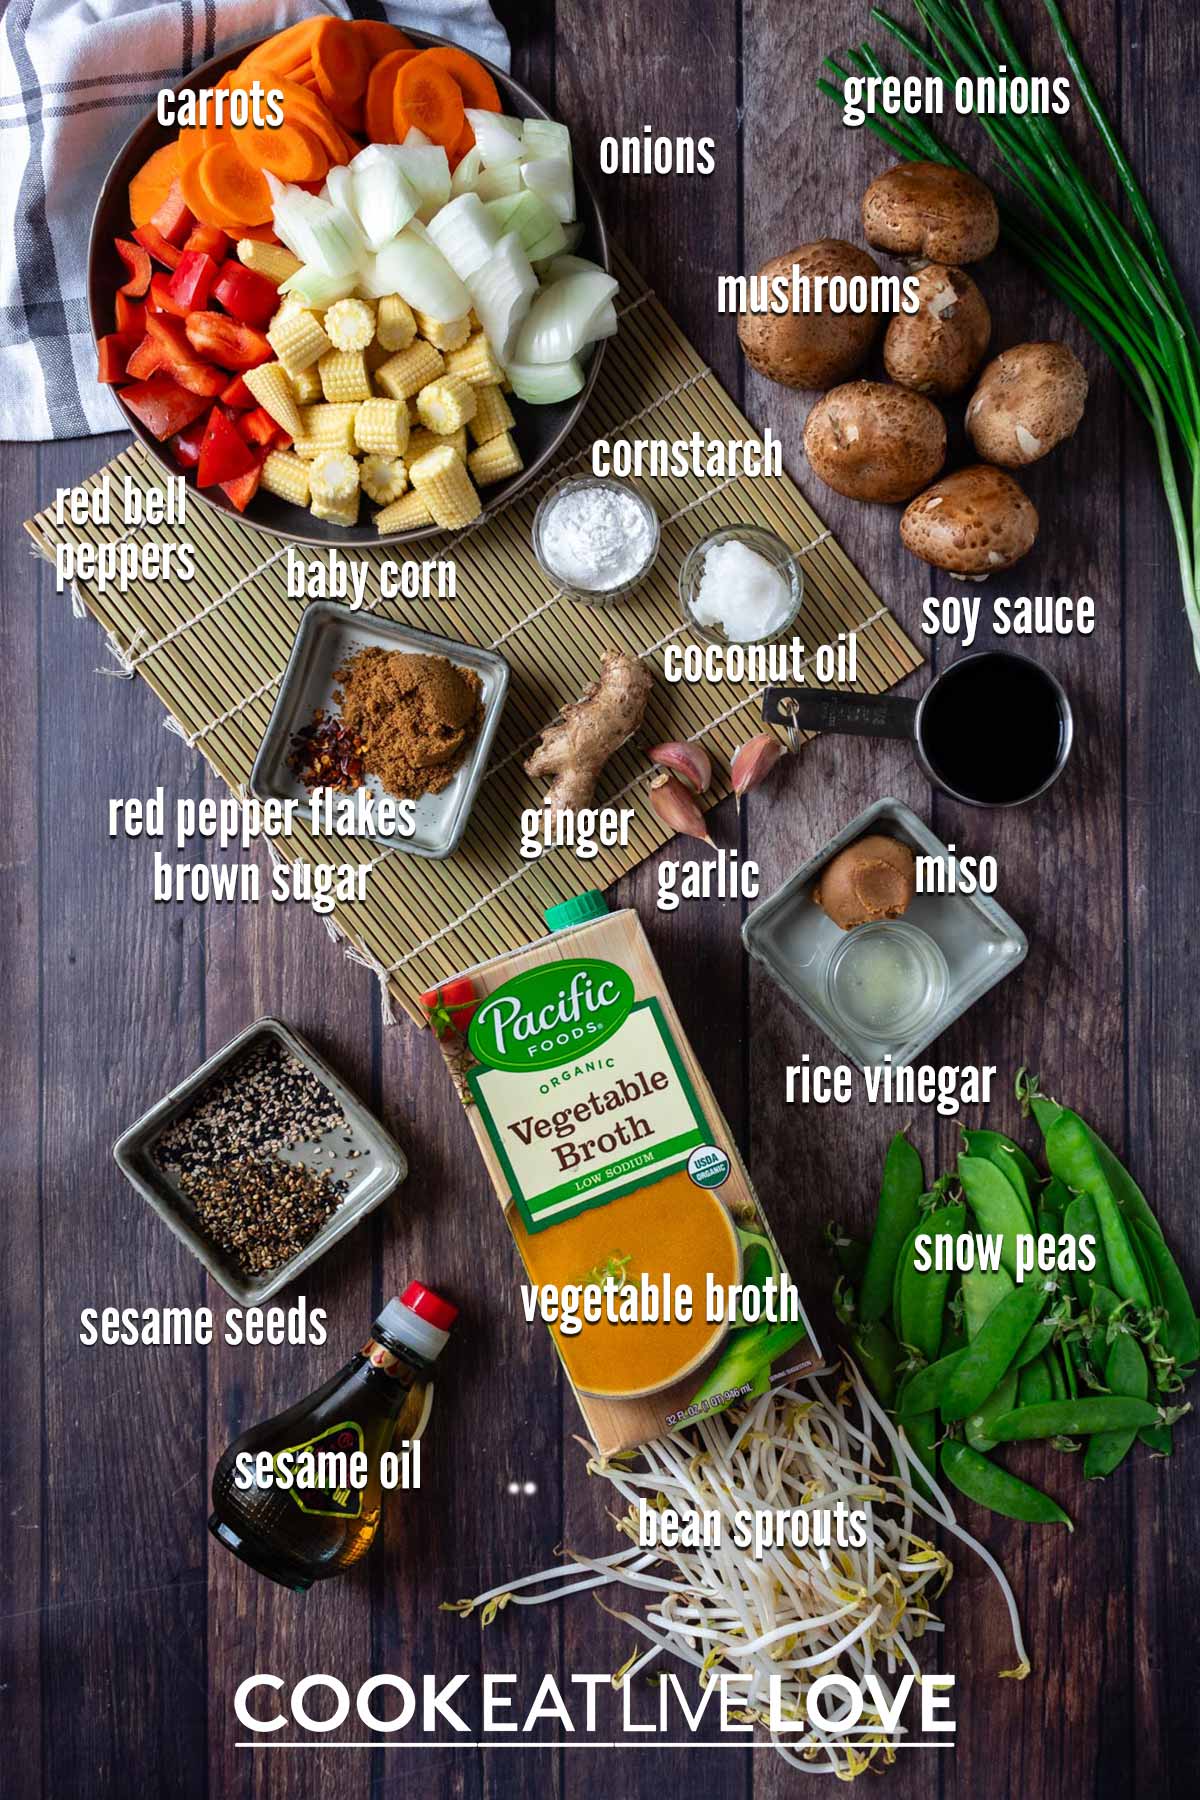 Ingredients to make instant pot stir fry vegetables.